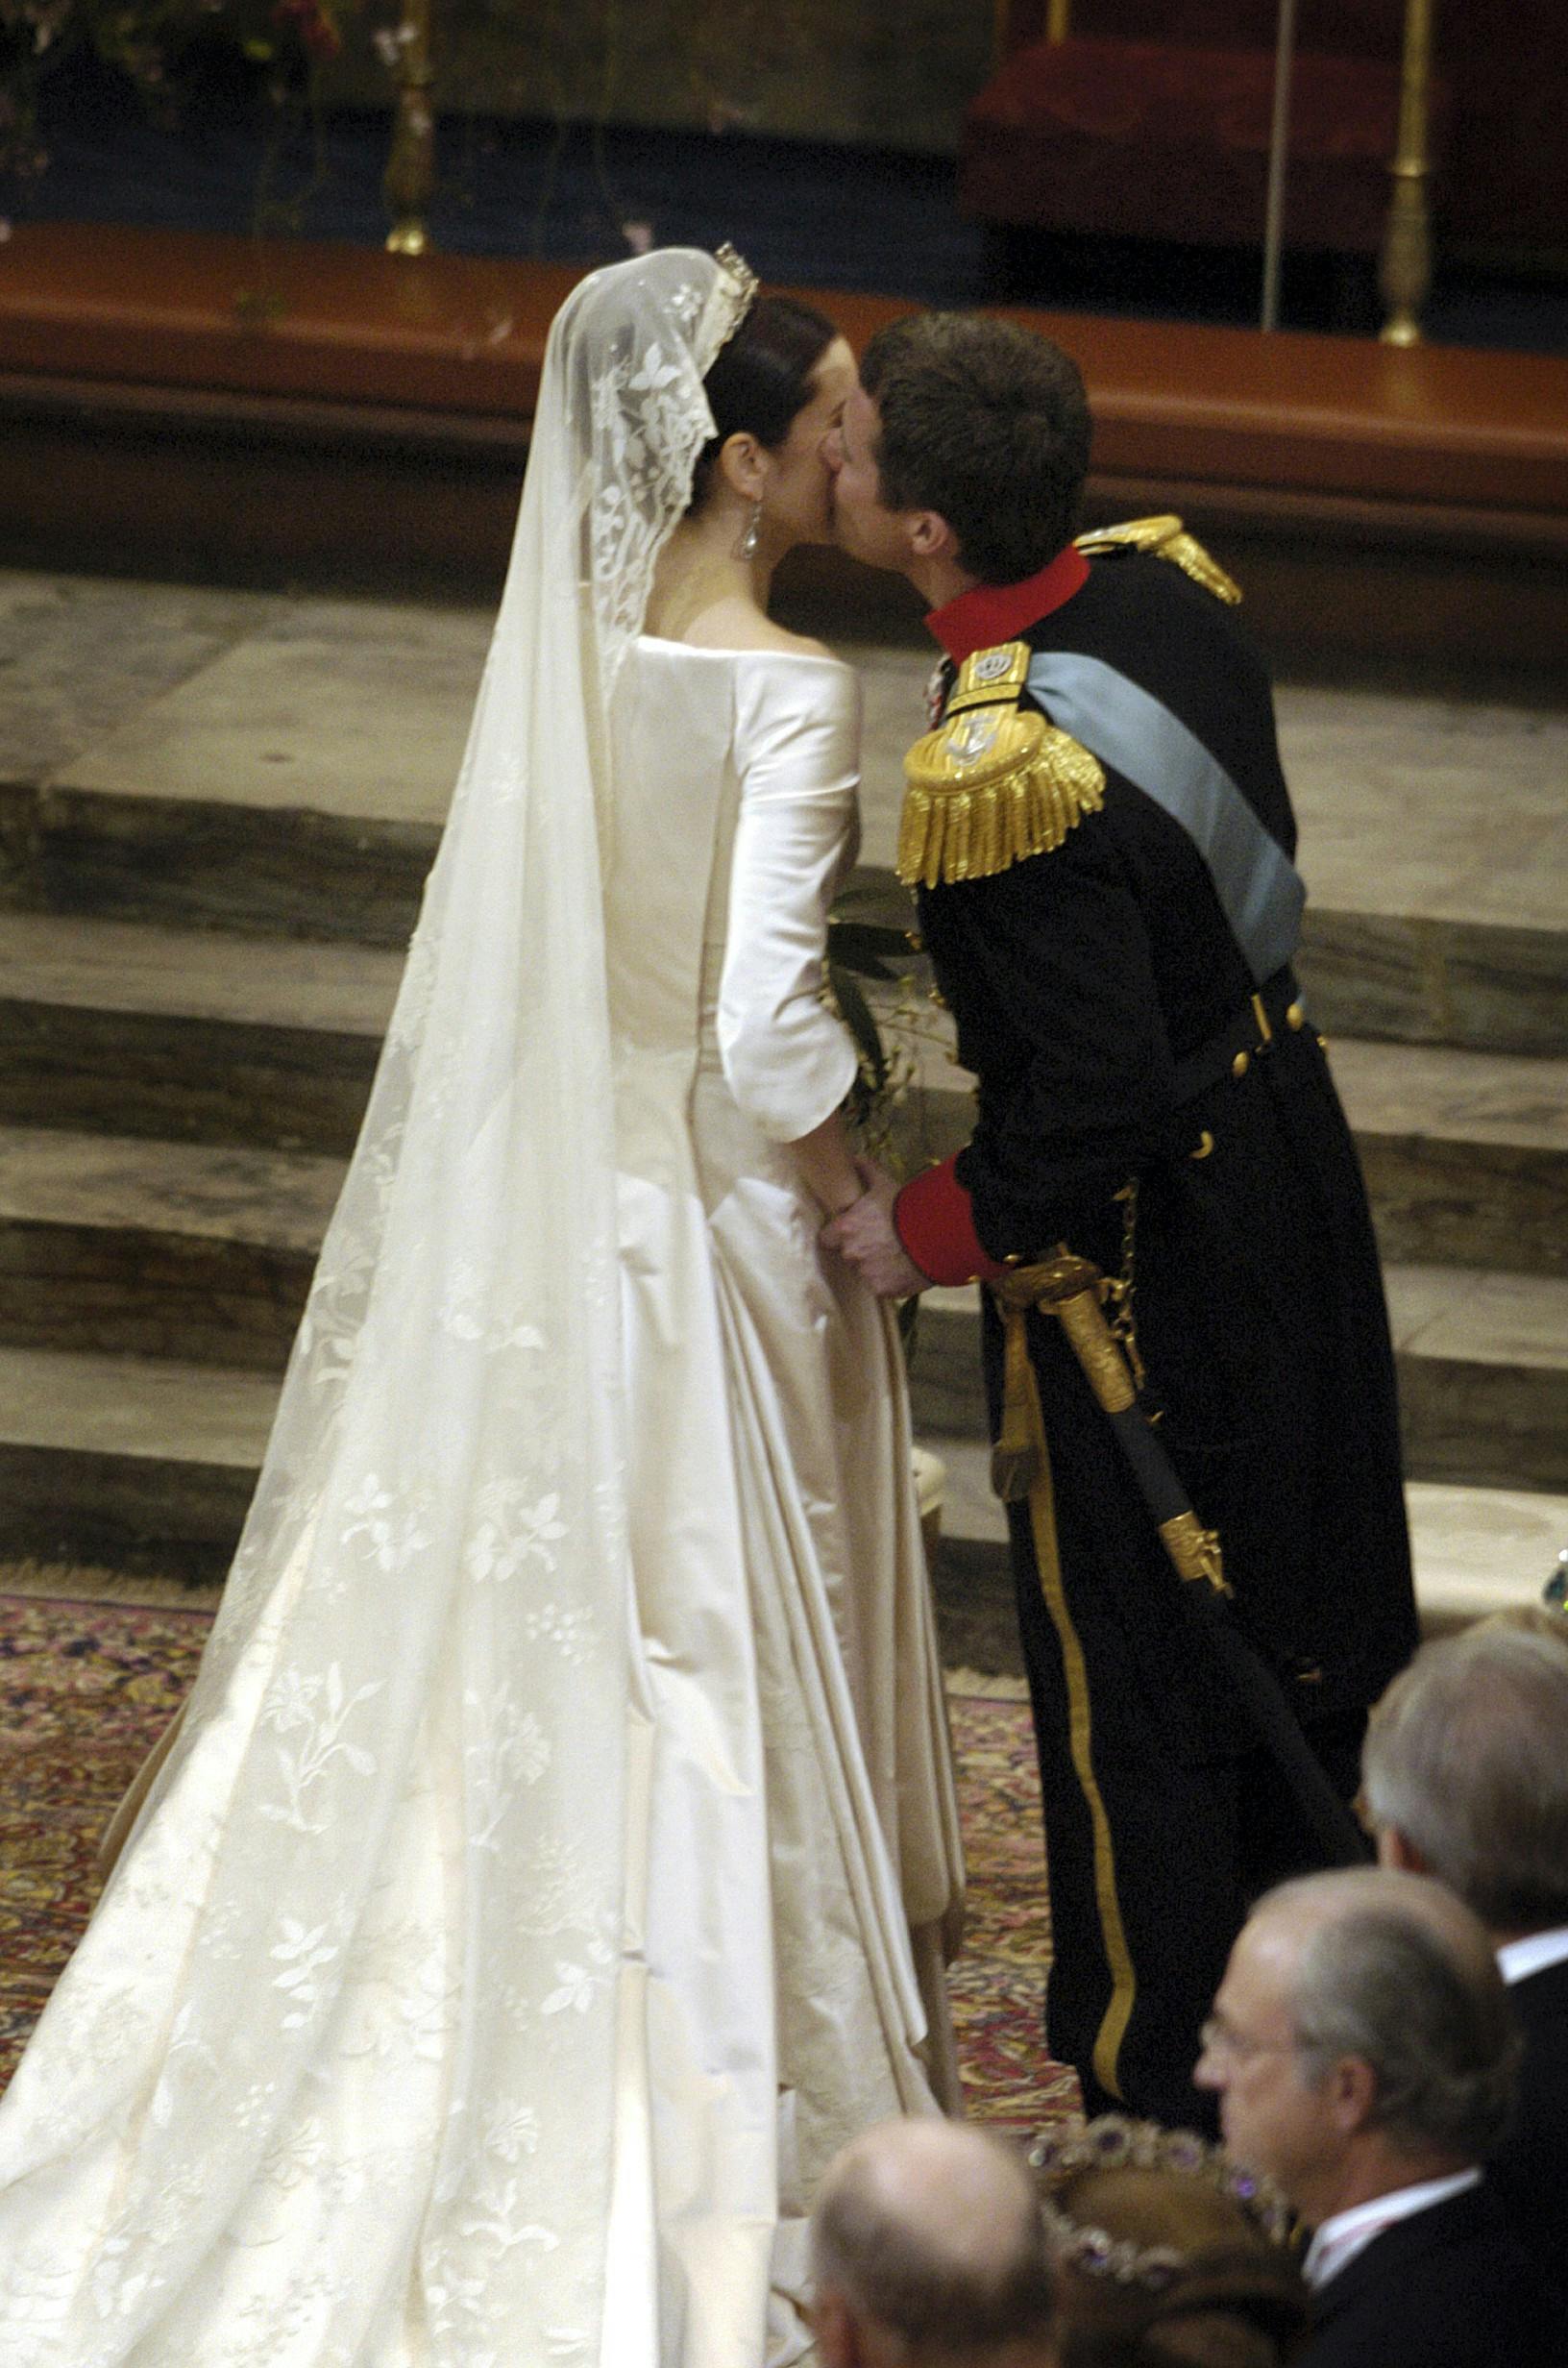 &nbsp;Frederik og Mary gav hinanden deres livs "ja" den 14. maj 2004.
